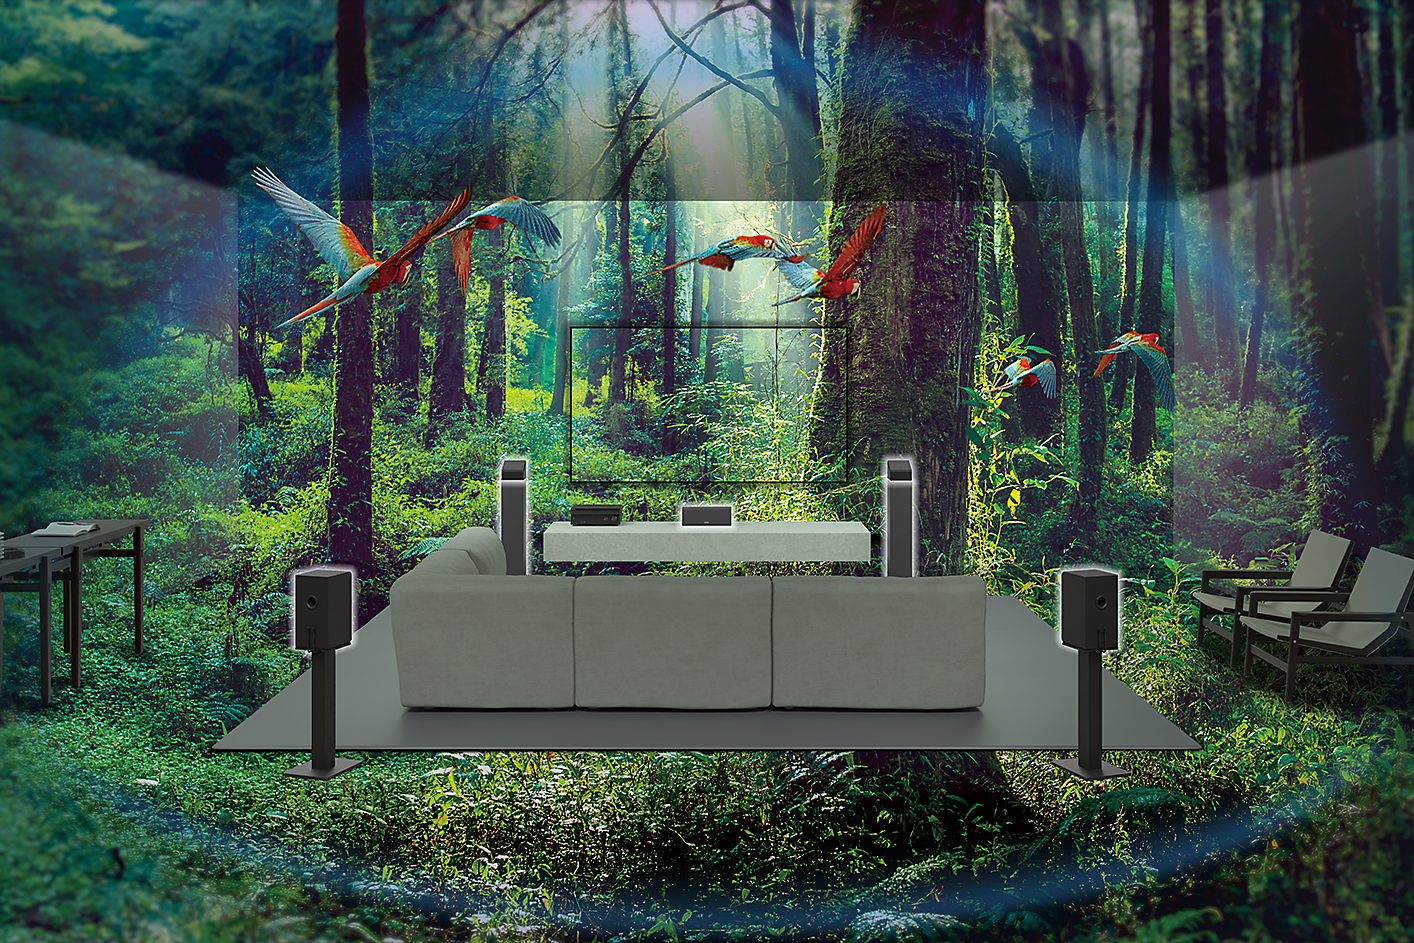 Слика од миндер, телевизор и звучници среде шума во која летаат папагали